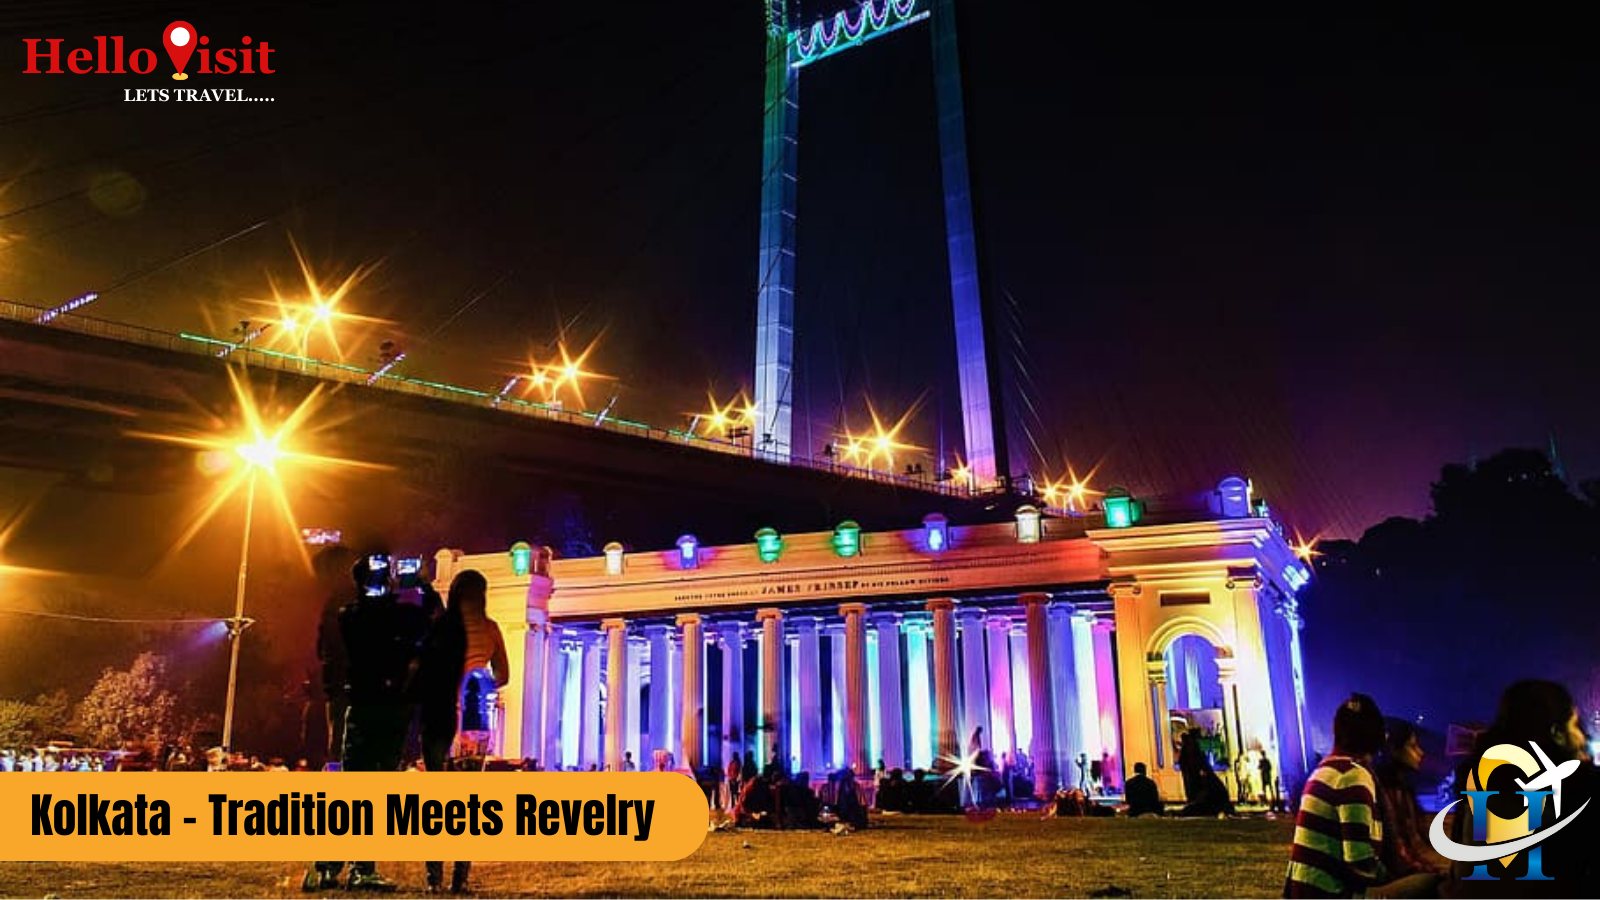 Kolkata - Tradition Meets Revelry